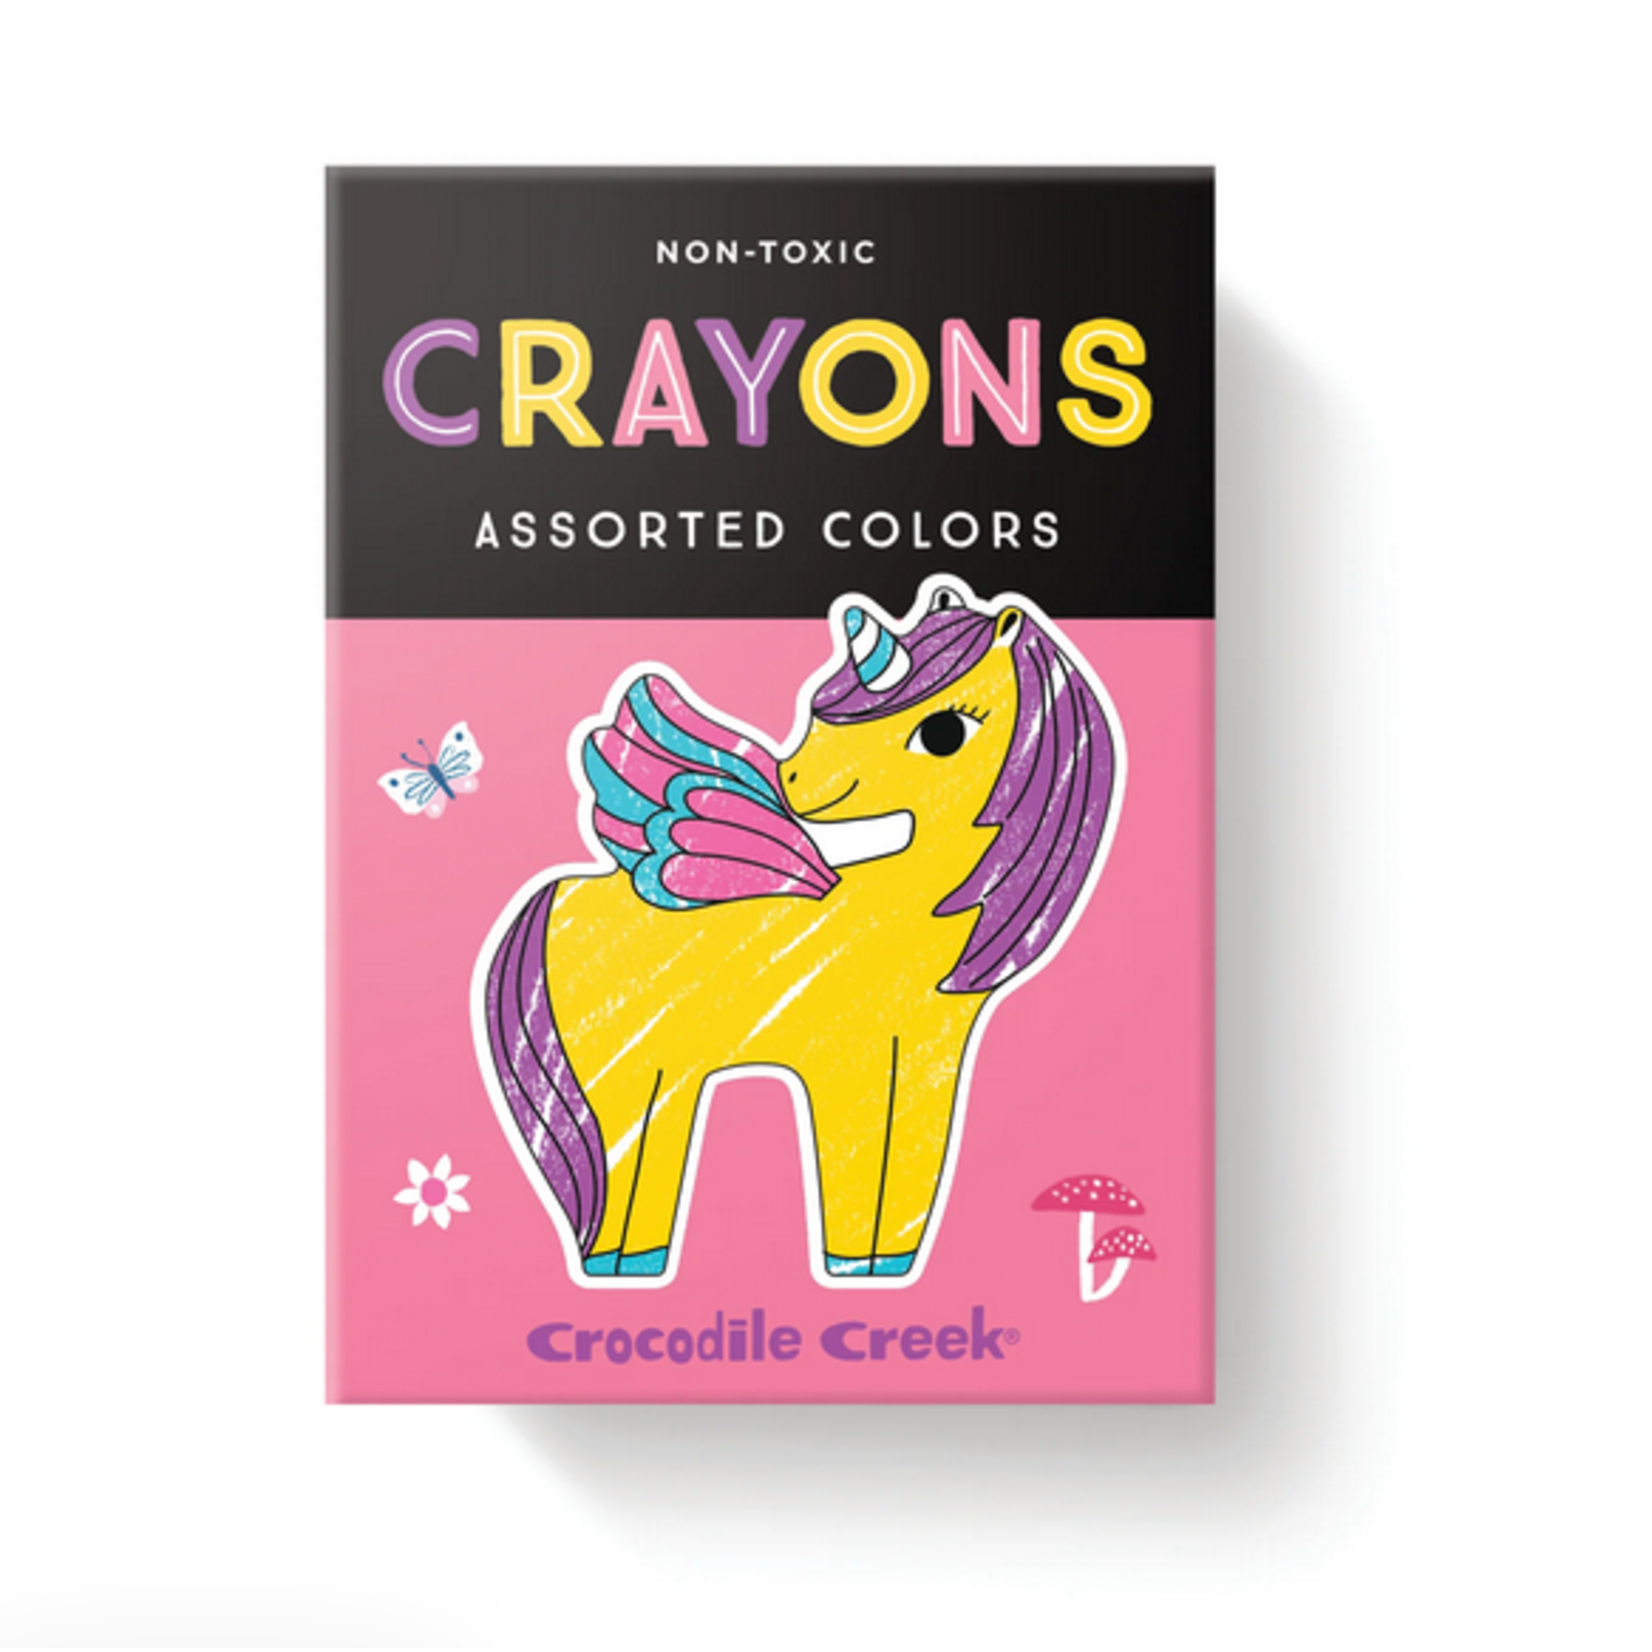 CROCODILE CREEK Coloring Stickers - Unicorn